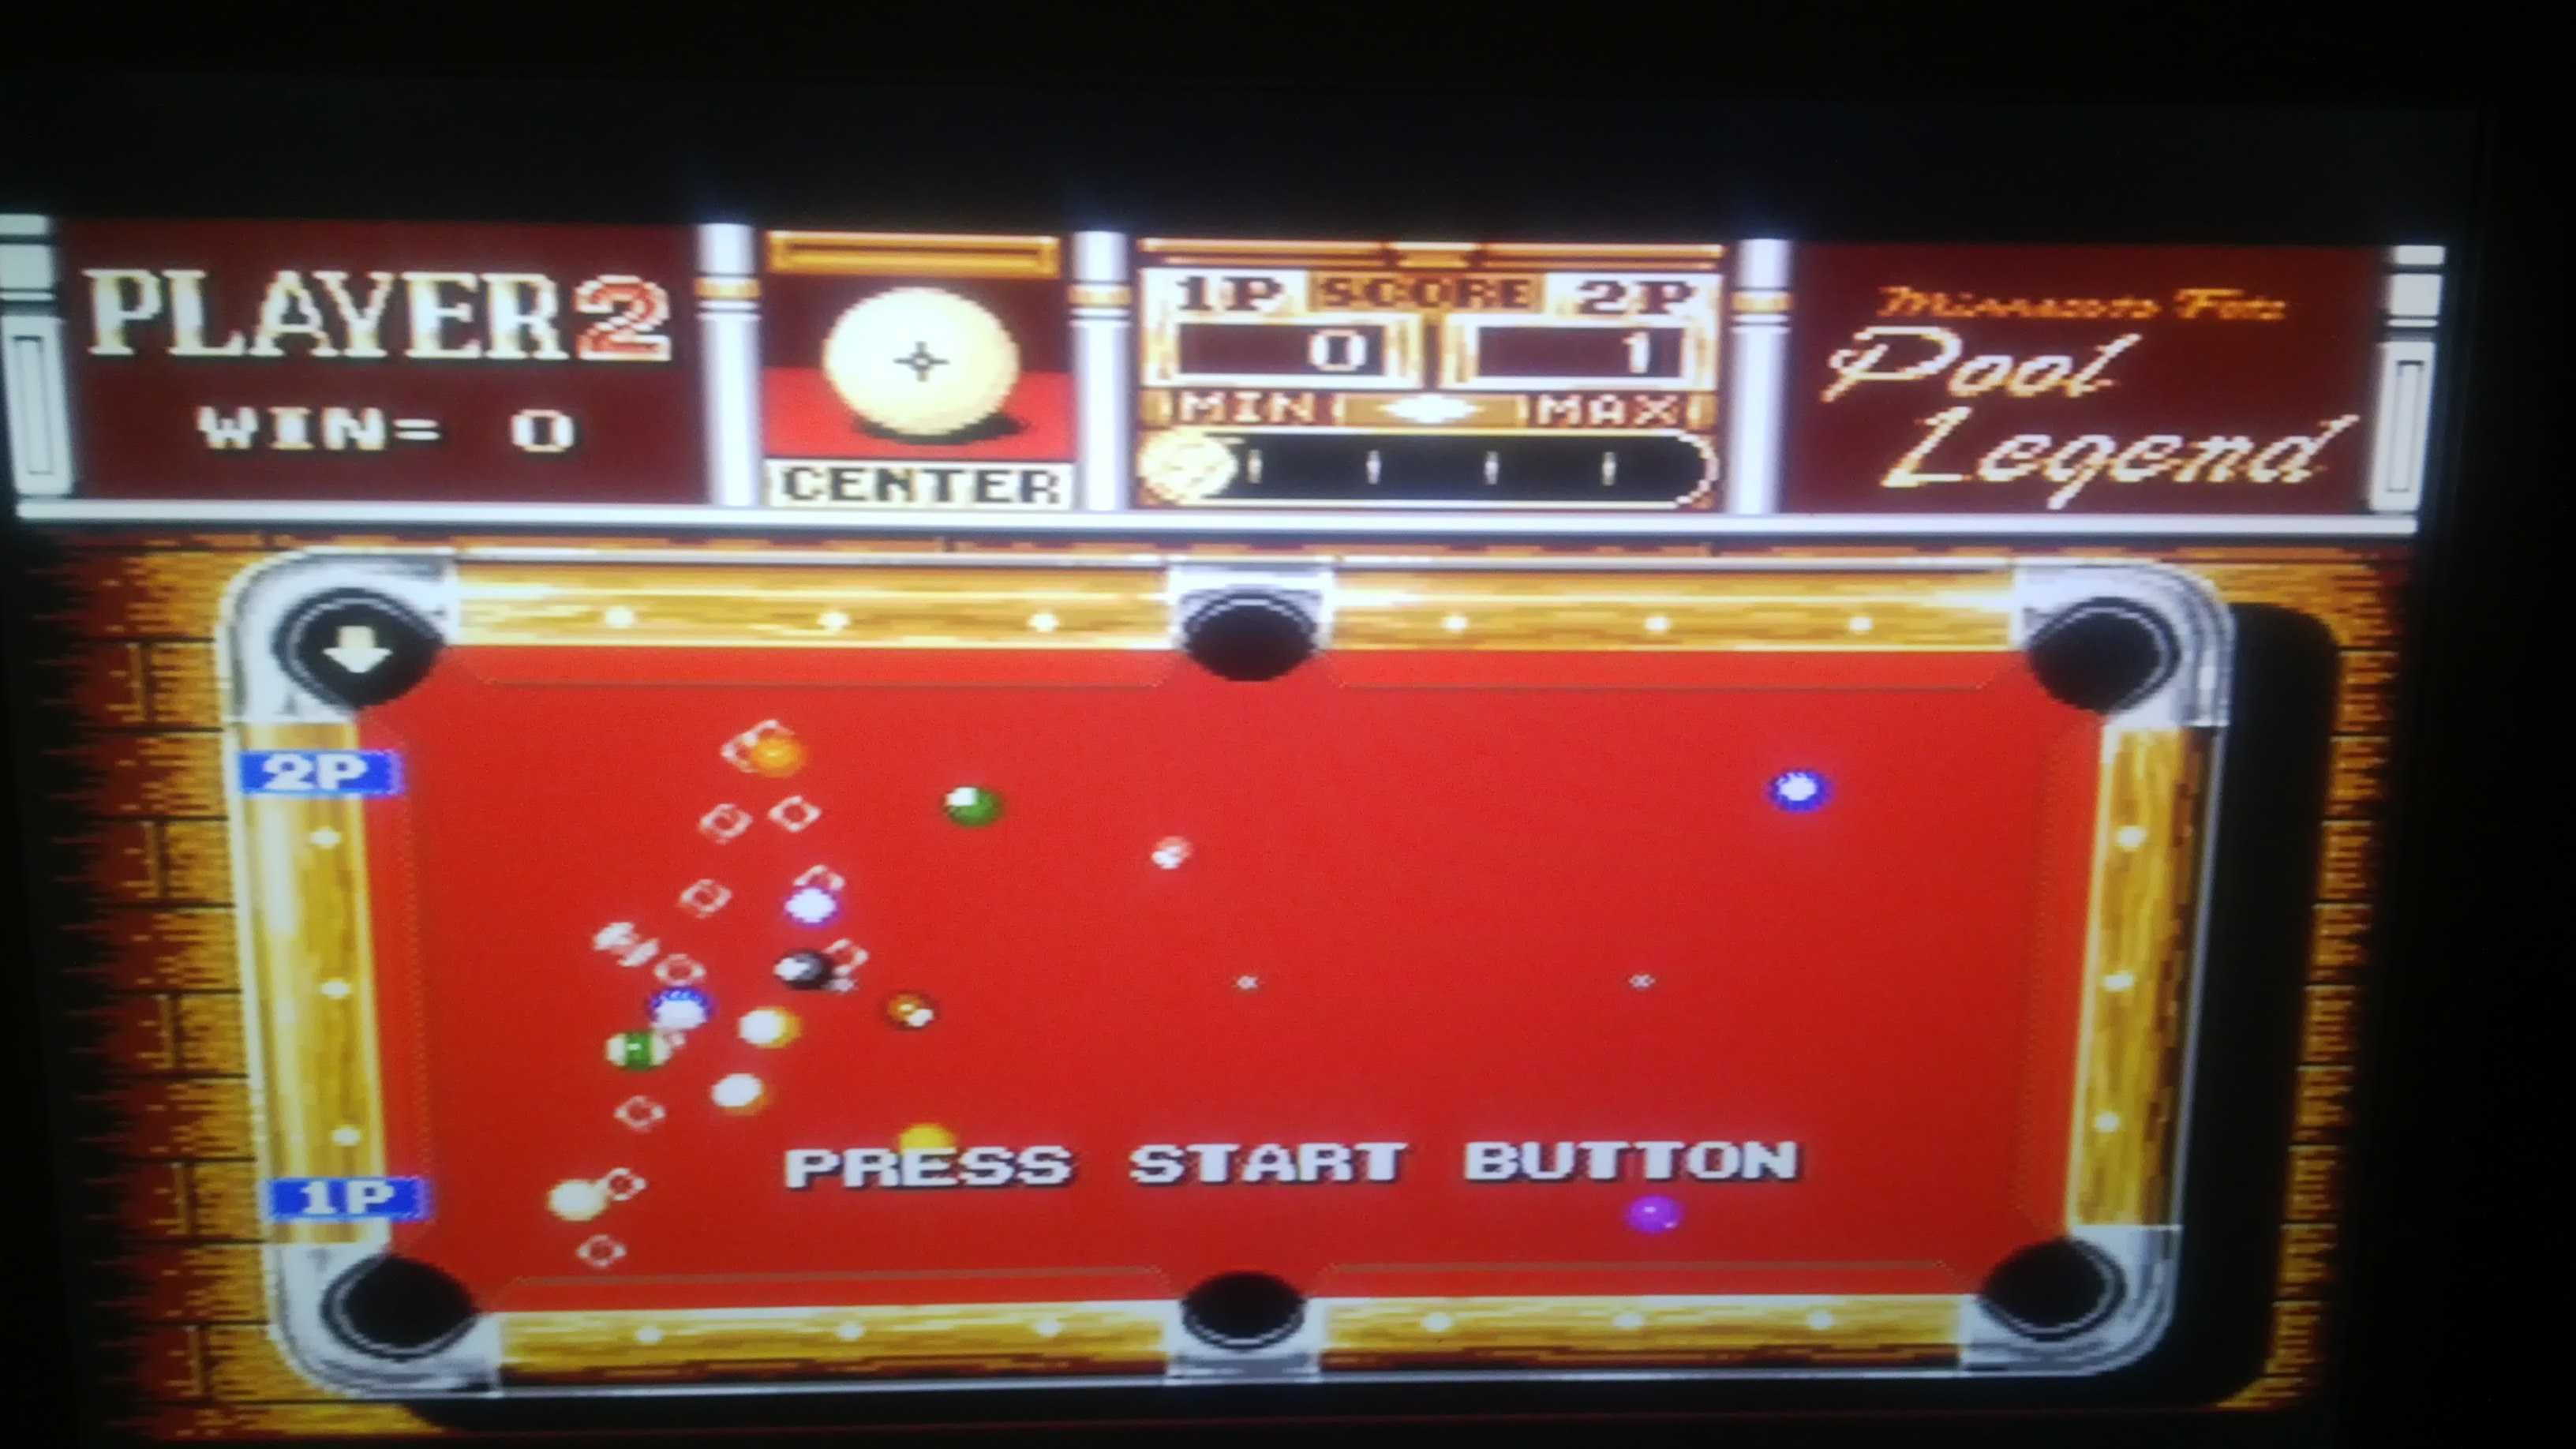 Картридж для приставки Sega 16bit Minesota Fats Pool Legend